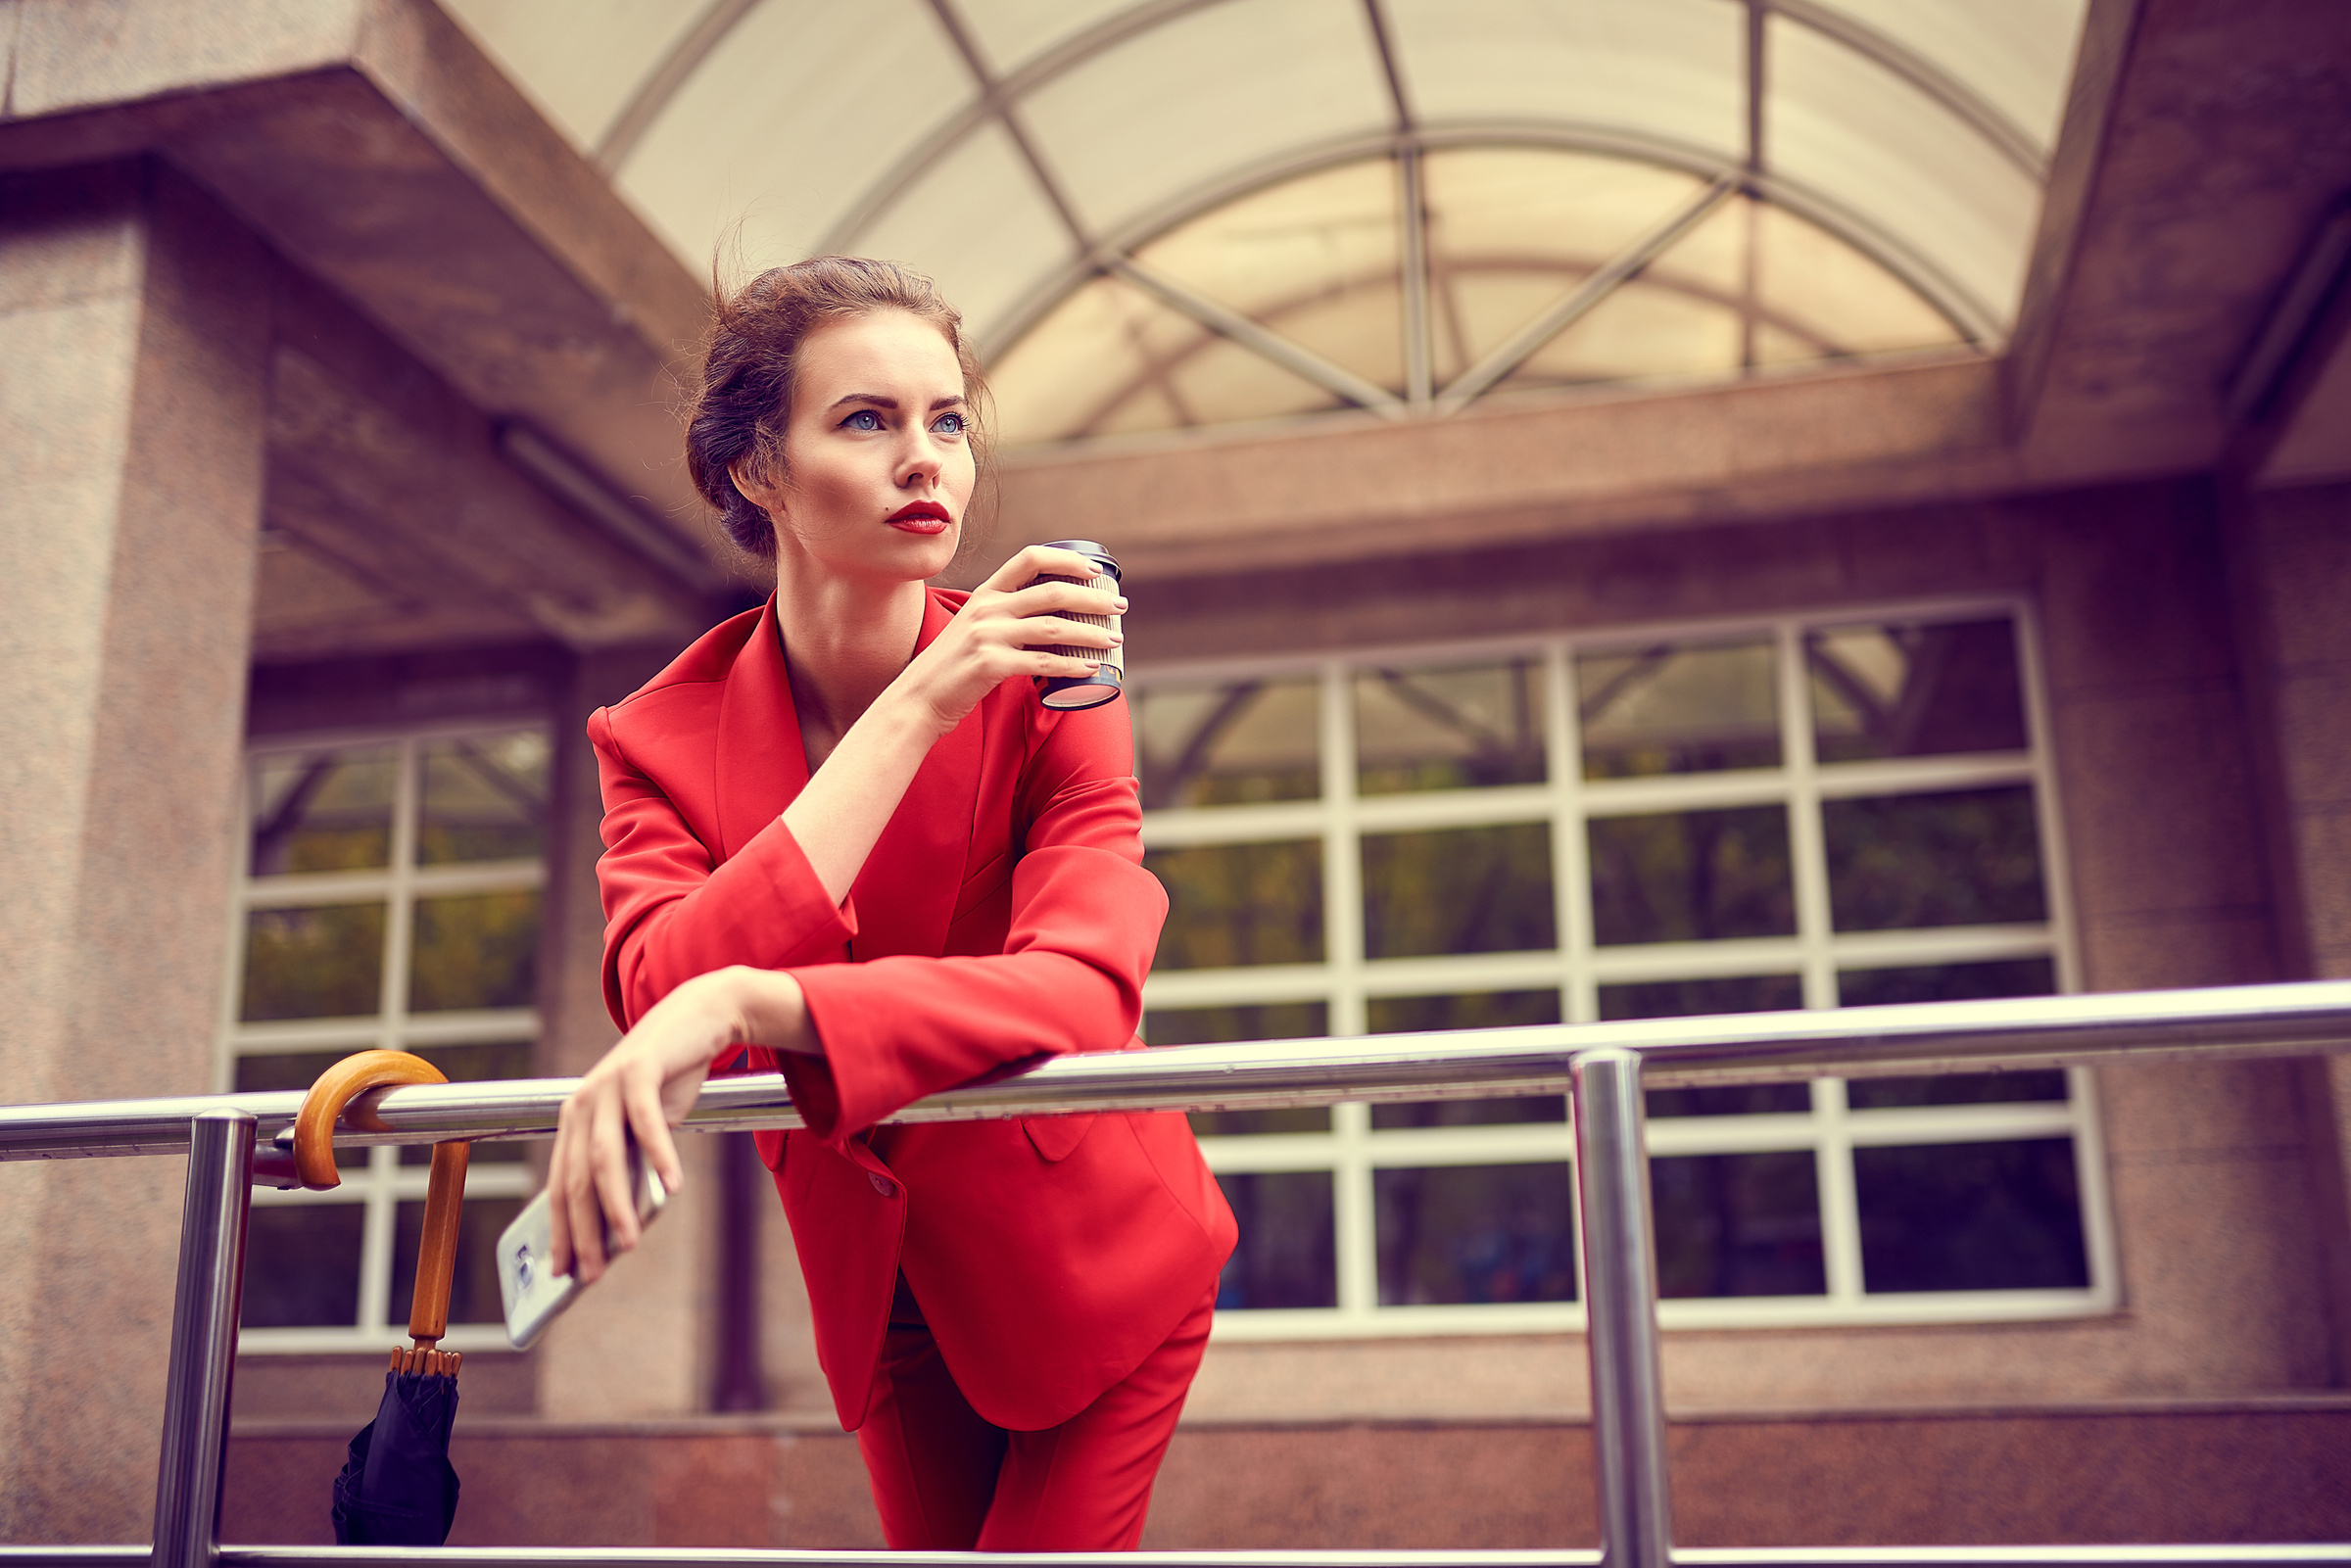 Lady in Red Taking Coffee Break Outdoors